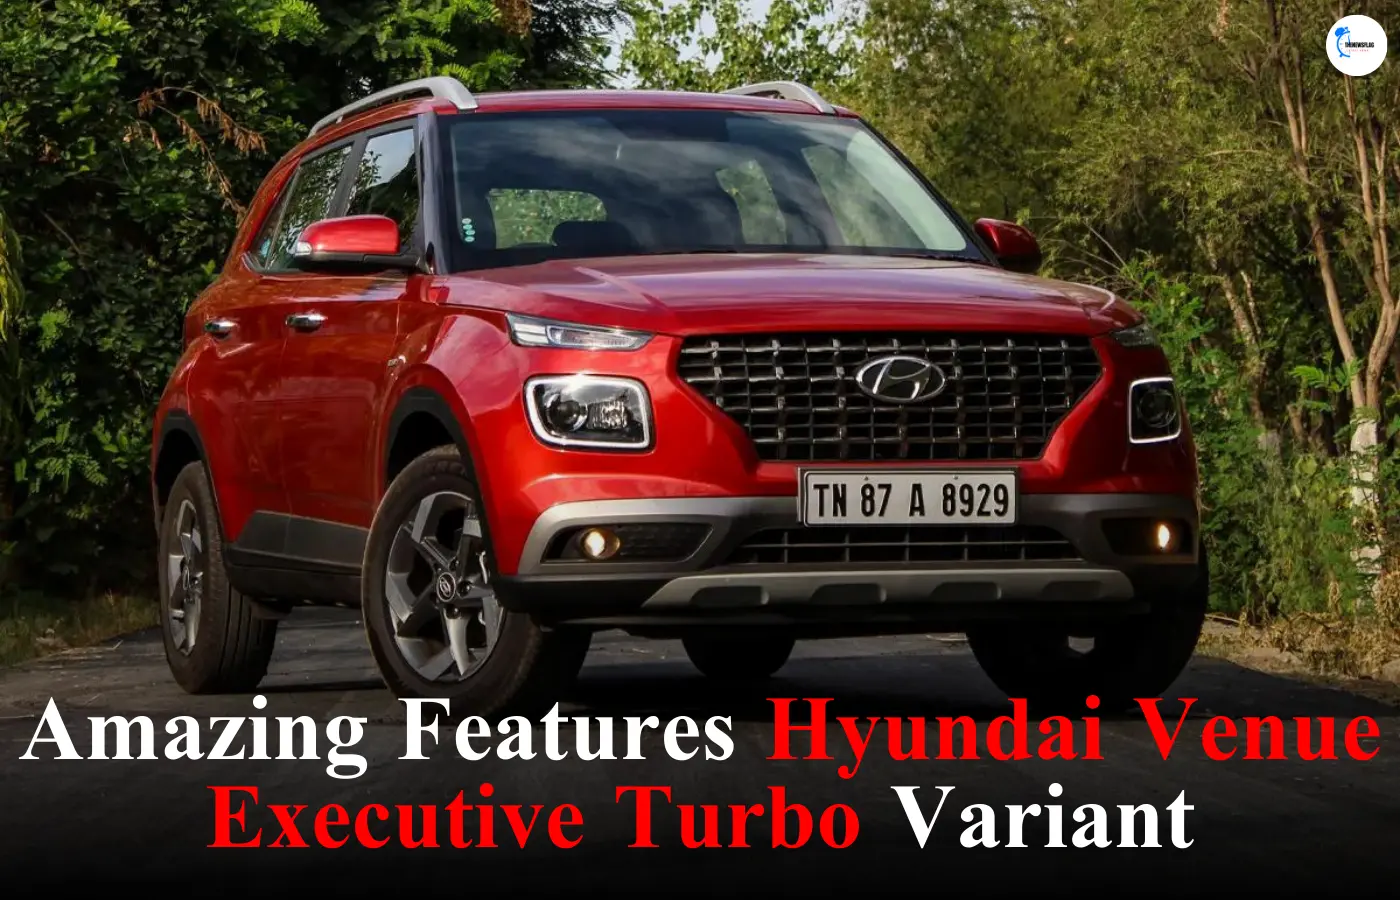 Hyundai Venue Executive Turbo Variant price in India